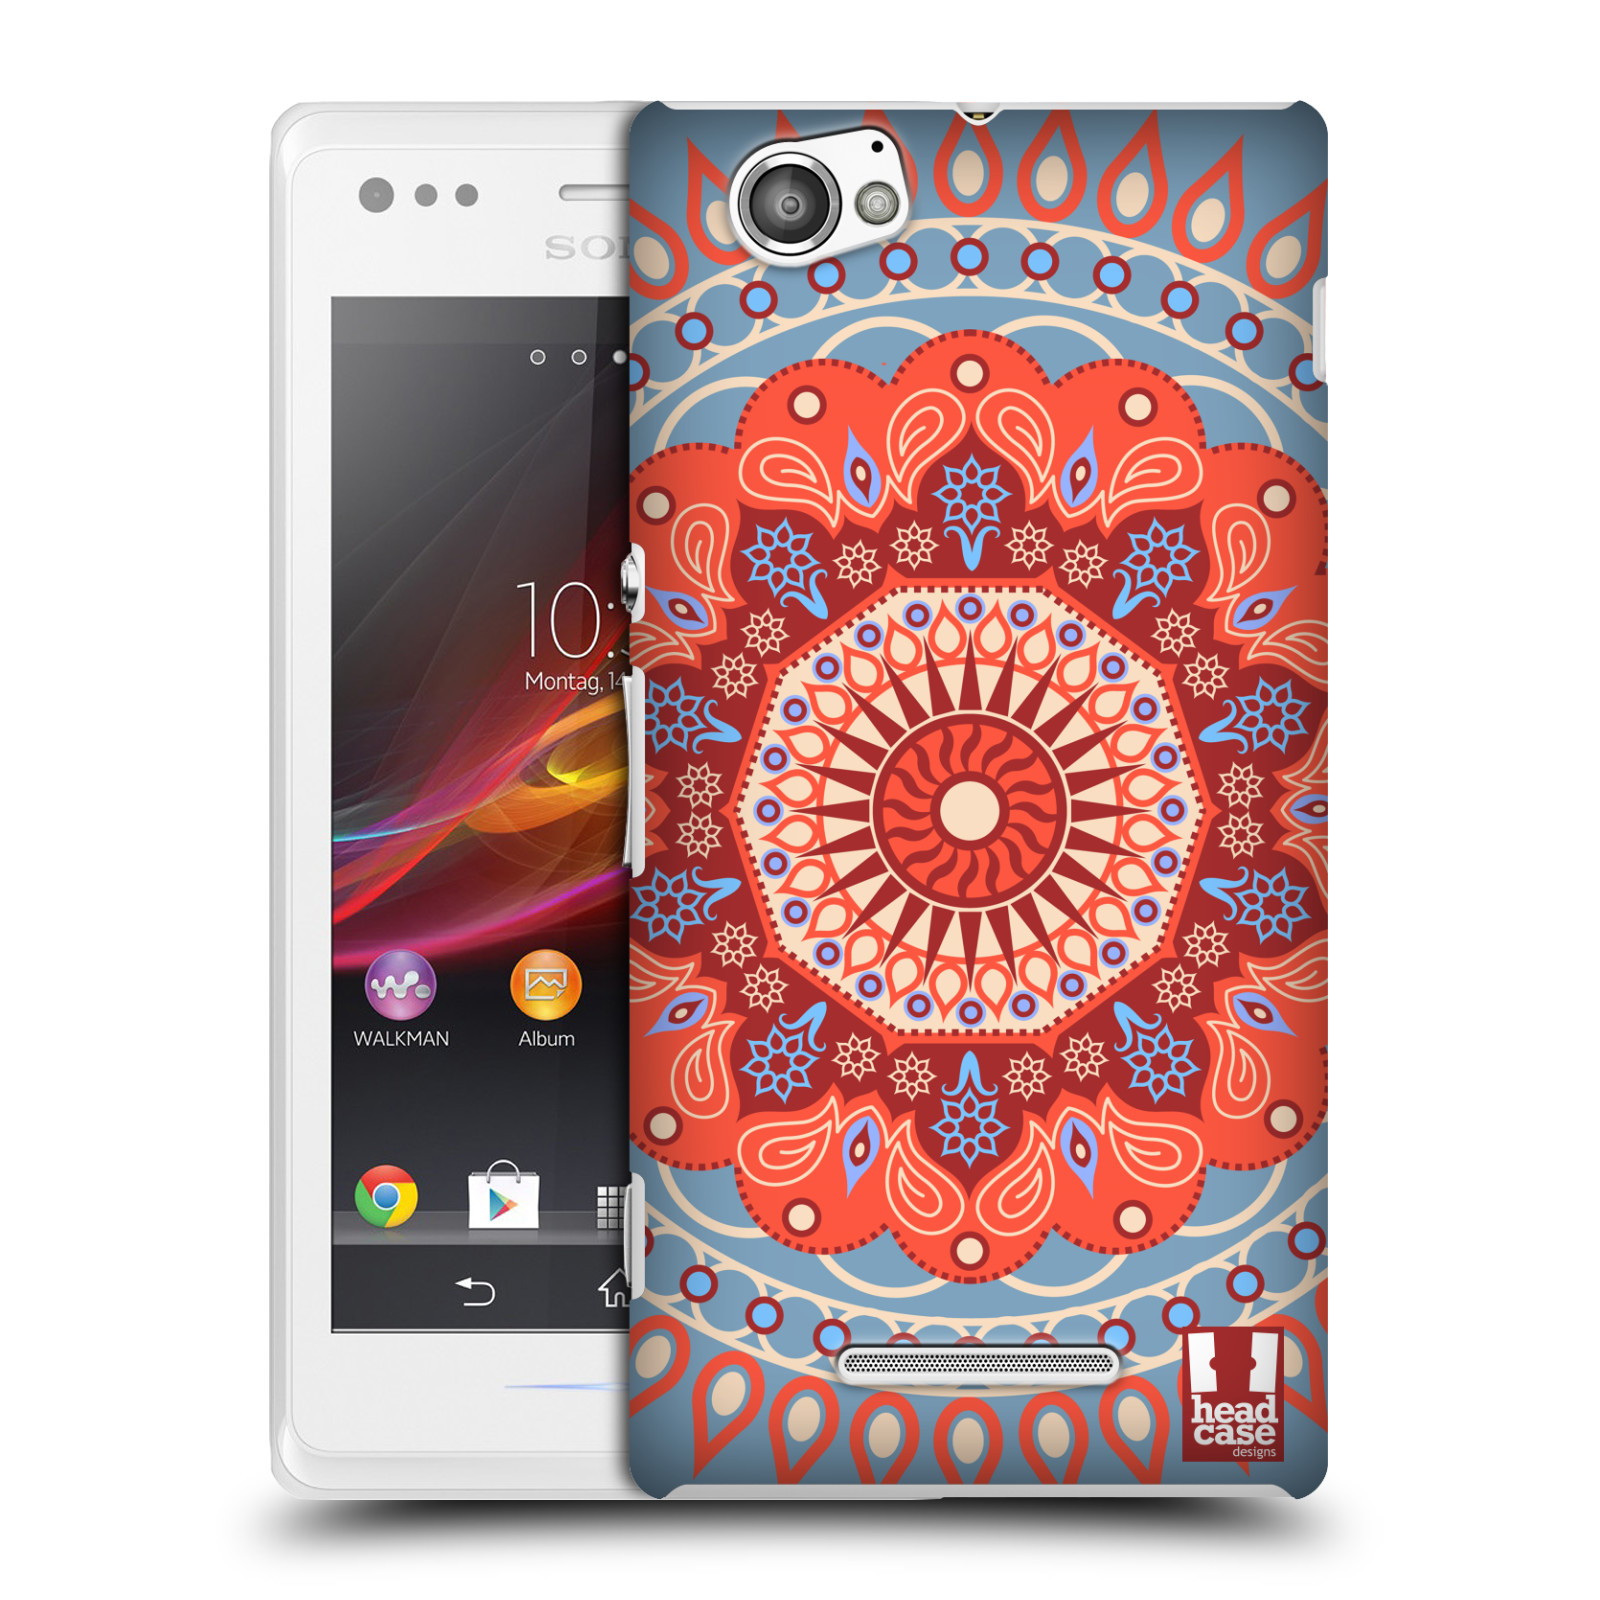 HEAD CASE plastový obal na mobil Sony Xperia M vzor Indie Mandala slunce barevný motiv ČERVENÁ A MODRÁ